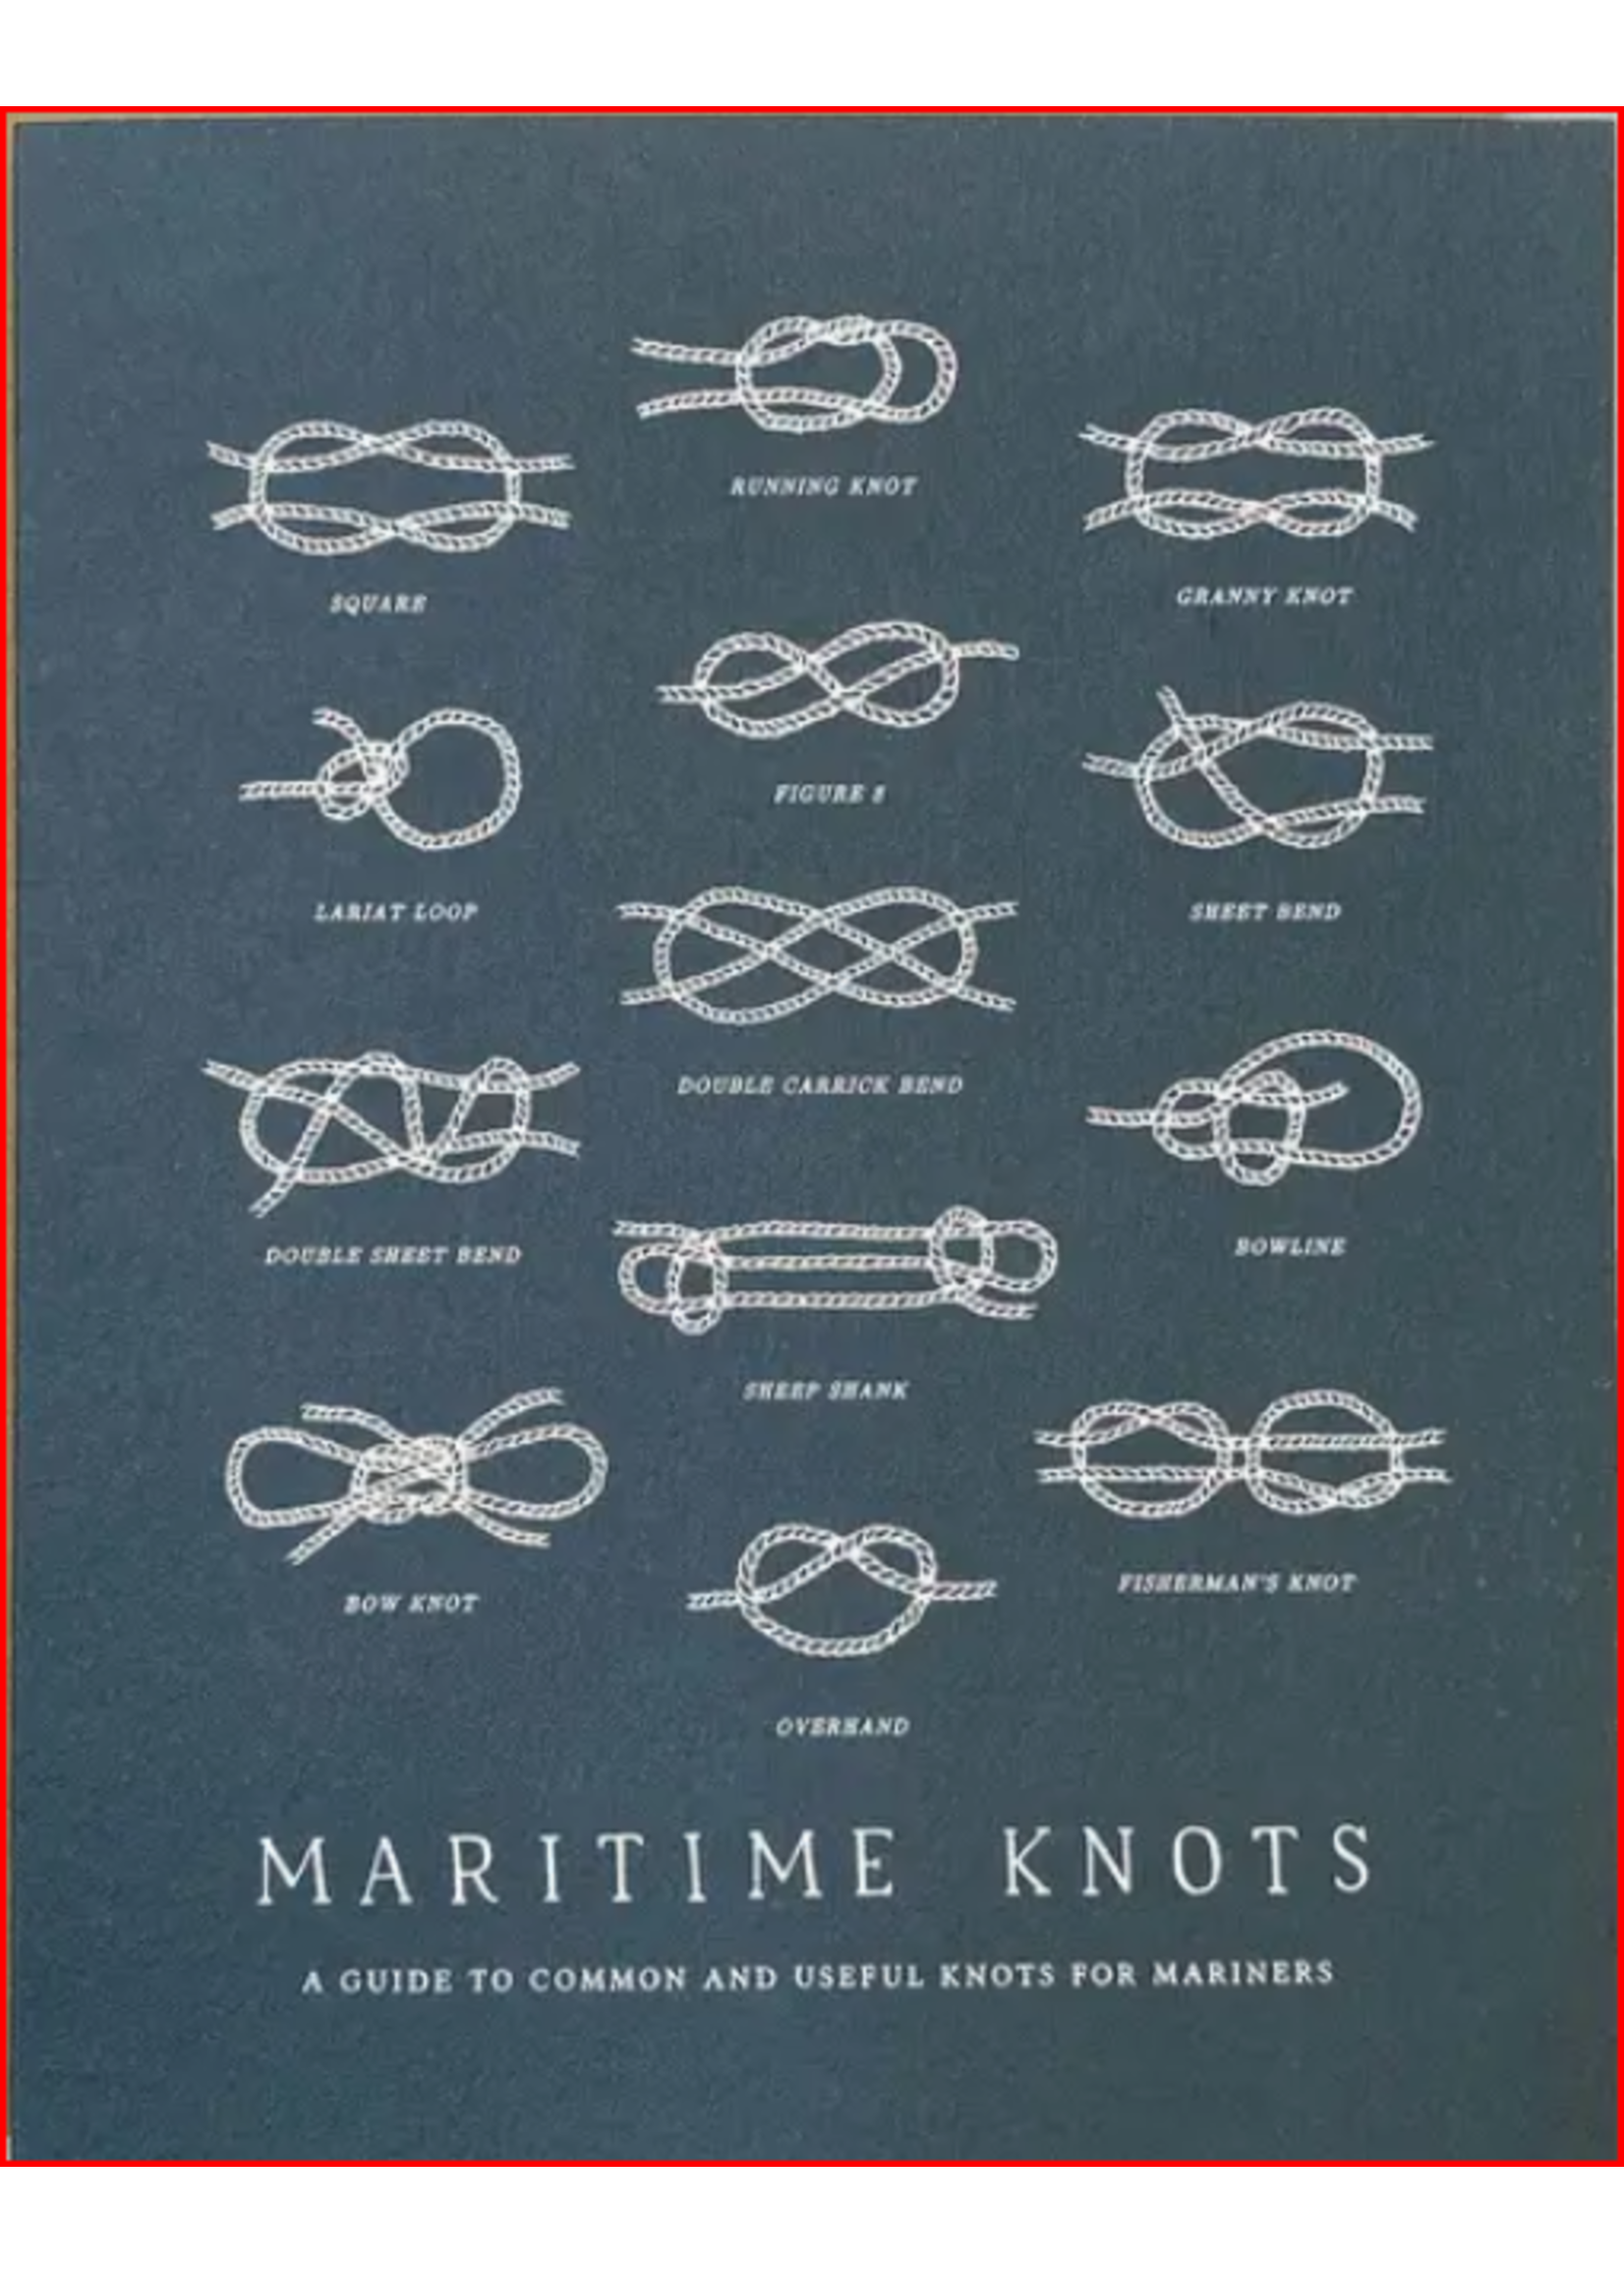 Faire - The Wild Wanderer Notecard, Maritime Knots